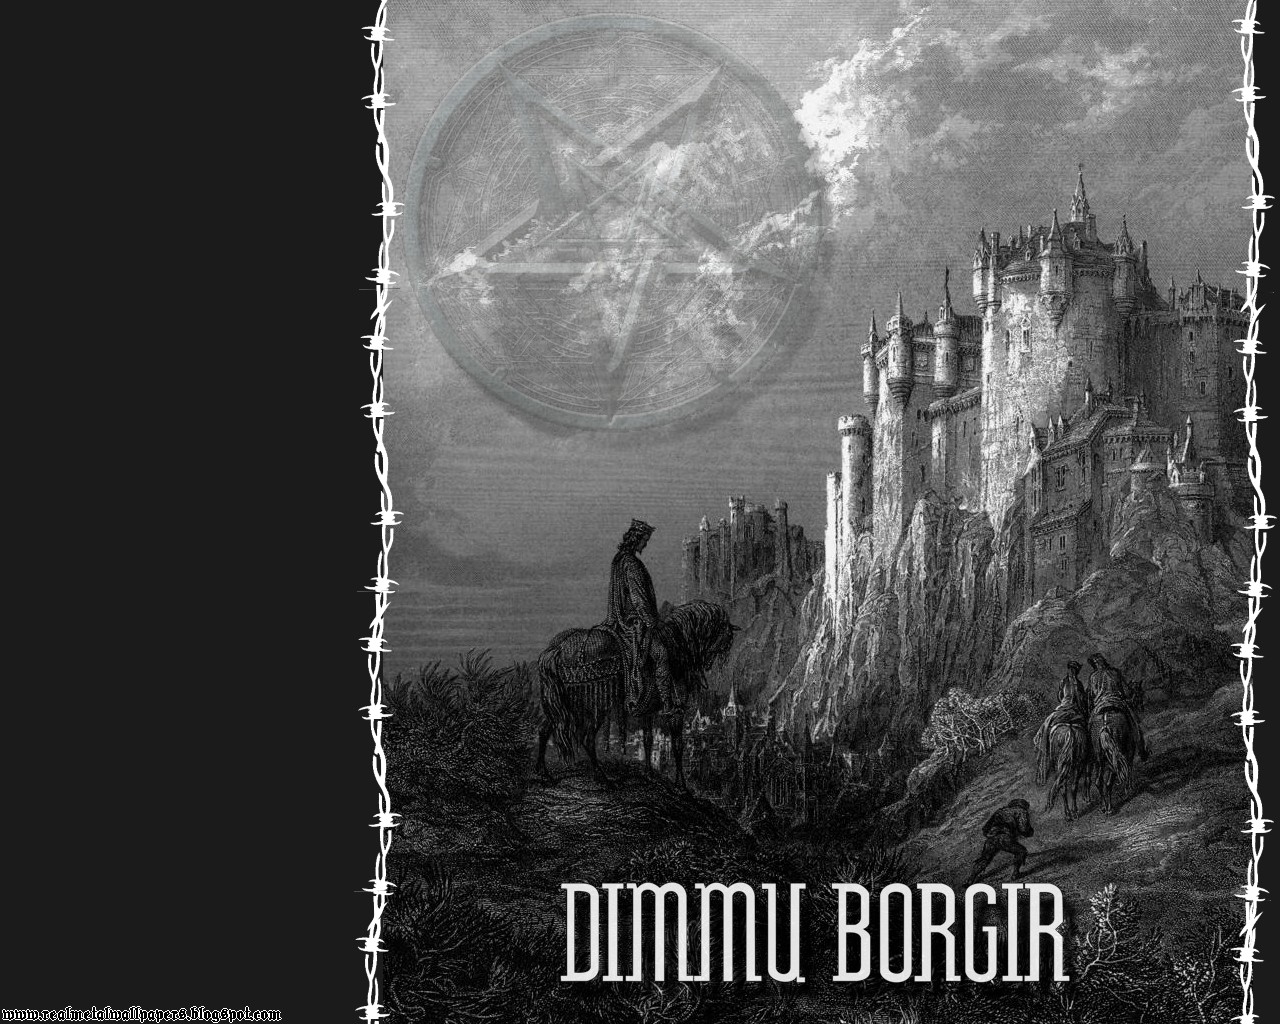 Real Metal Wallpaper Dimmu Borgir Black Band